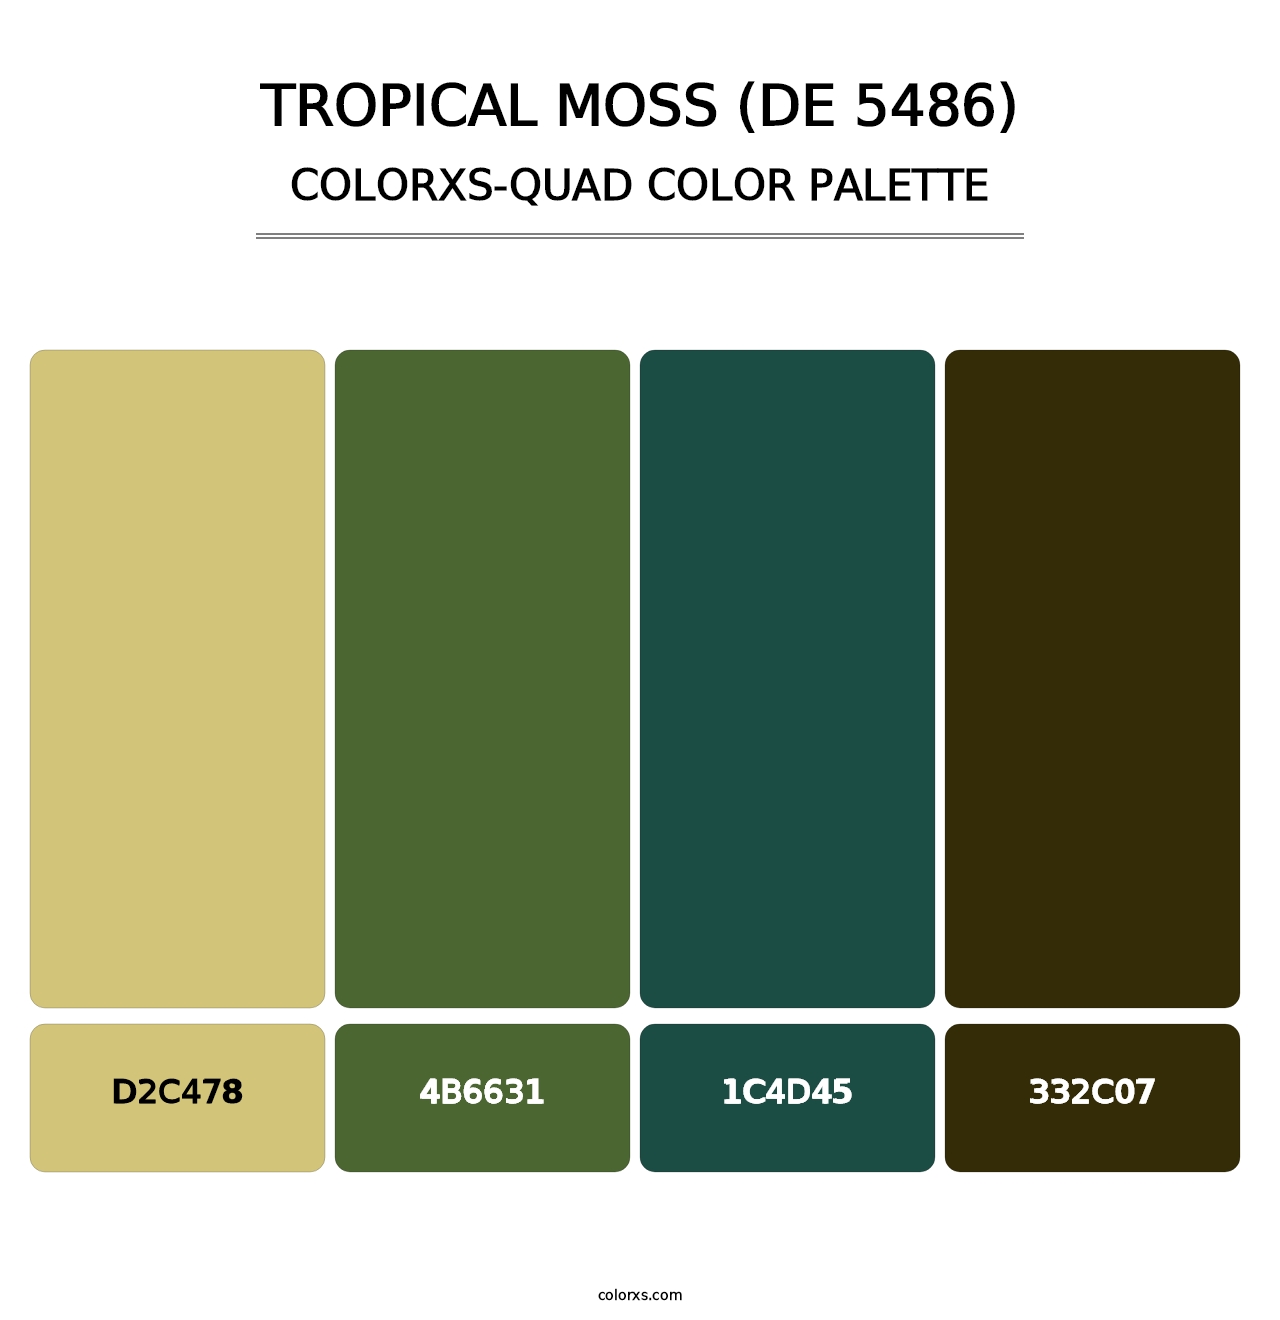 Tropical Moss (DE 5486) - Colorxs Quad Palette